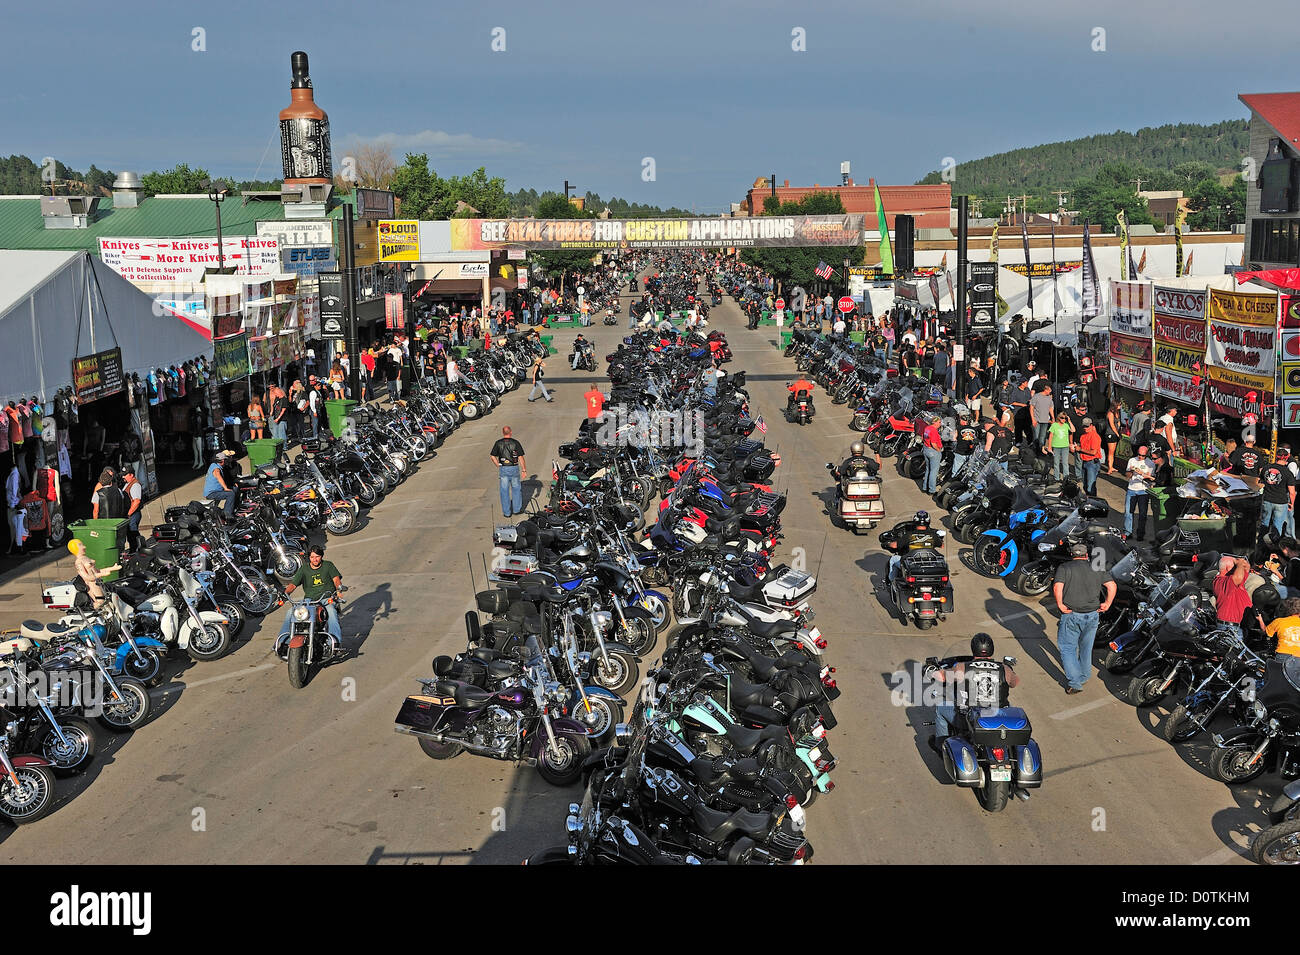 Fahrräder, Fahrrad, überfüllt, Straße, Harley, Harley Davidson, Motorrad, Rallye, Innenstadt, Sturgis, South Dakota, USA, Vereinigte Staaten, A Stockfoto